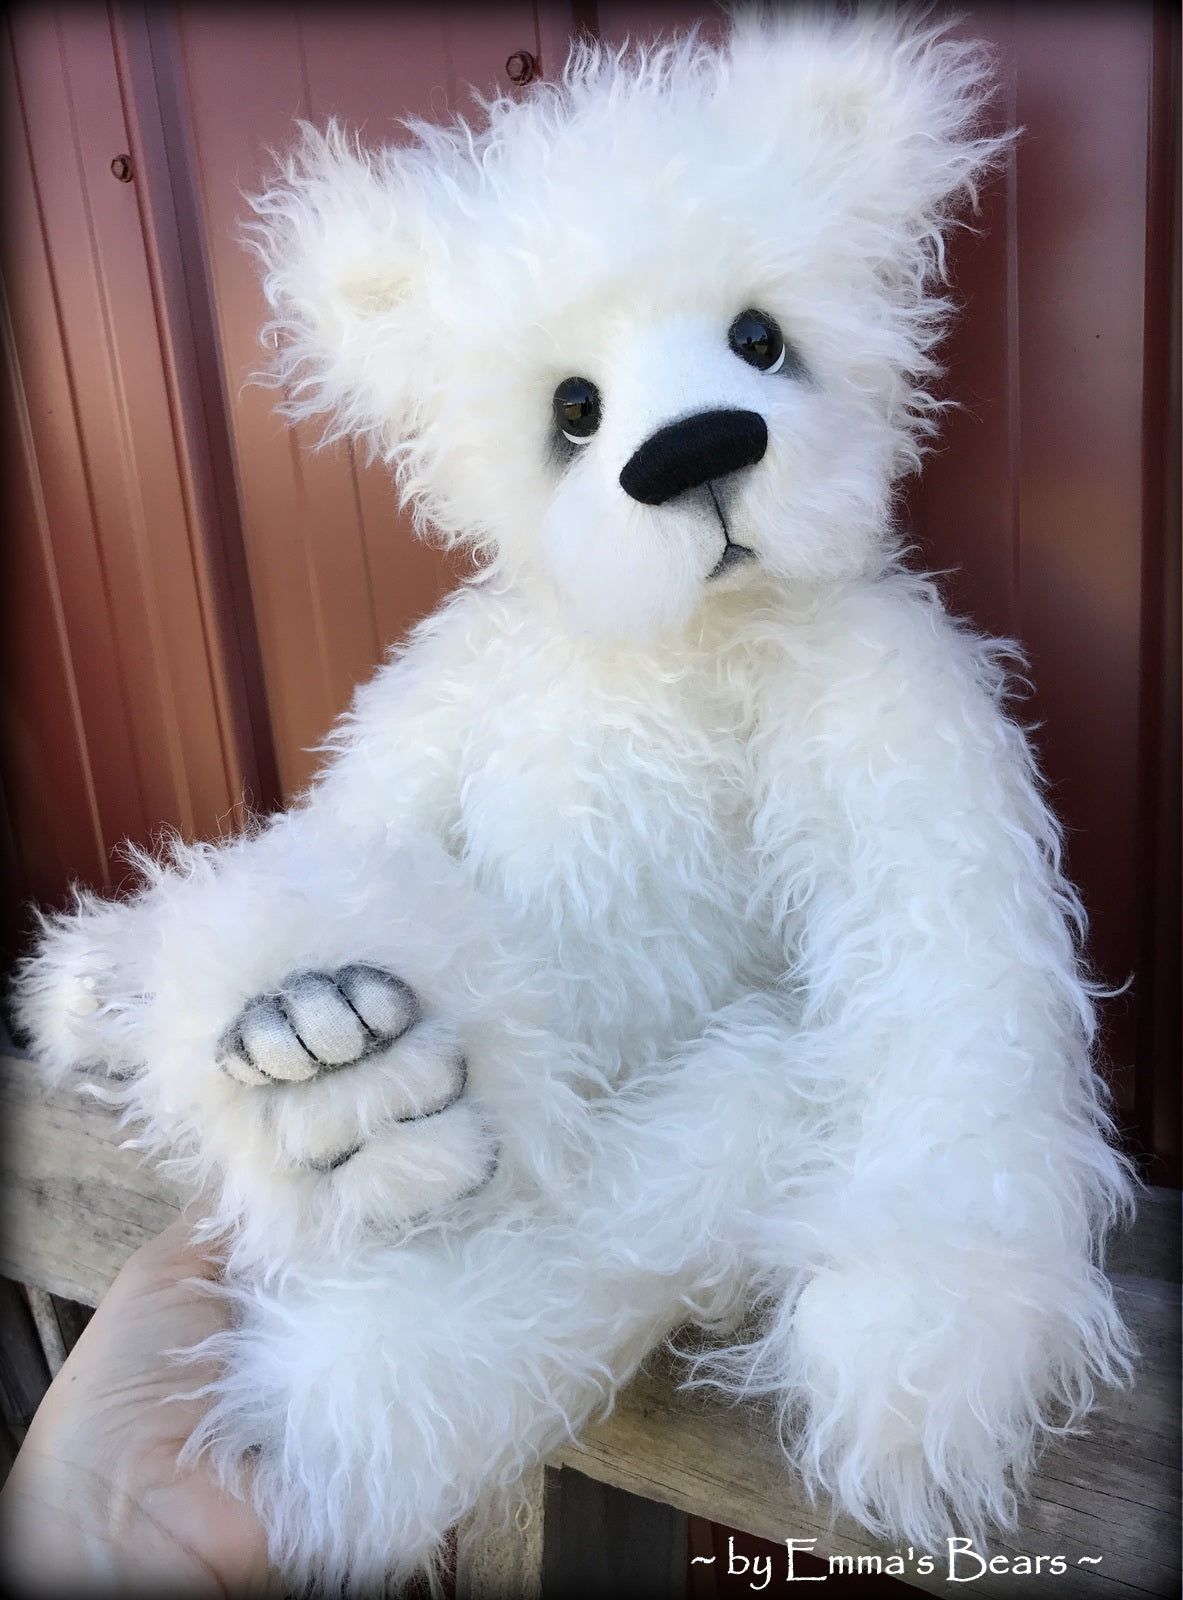 Toddler Amara Adeline - 22in white MOHAIR Artist toddler style Panda Bear by Emmas Bears - OOAK